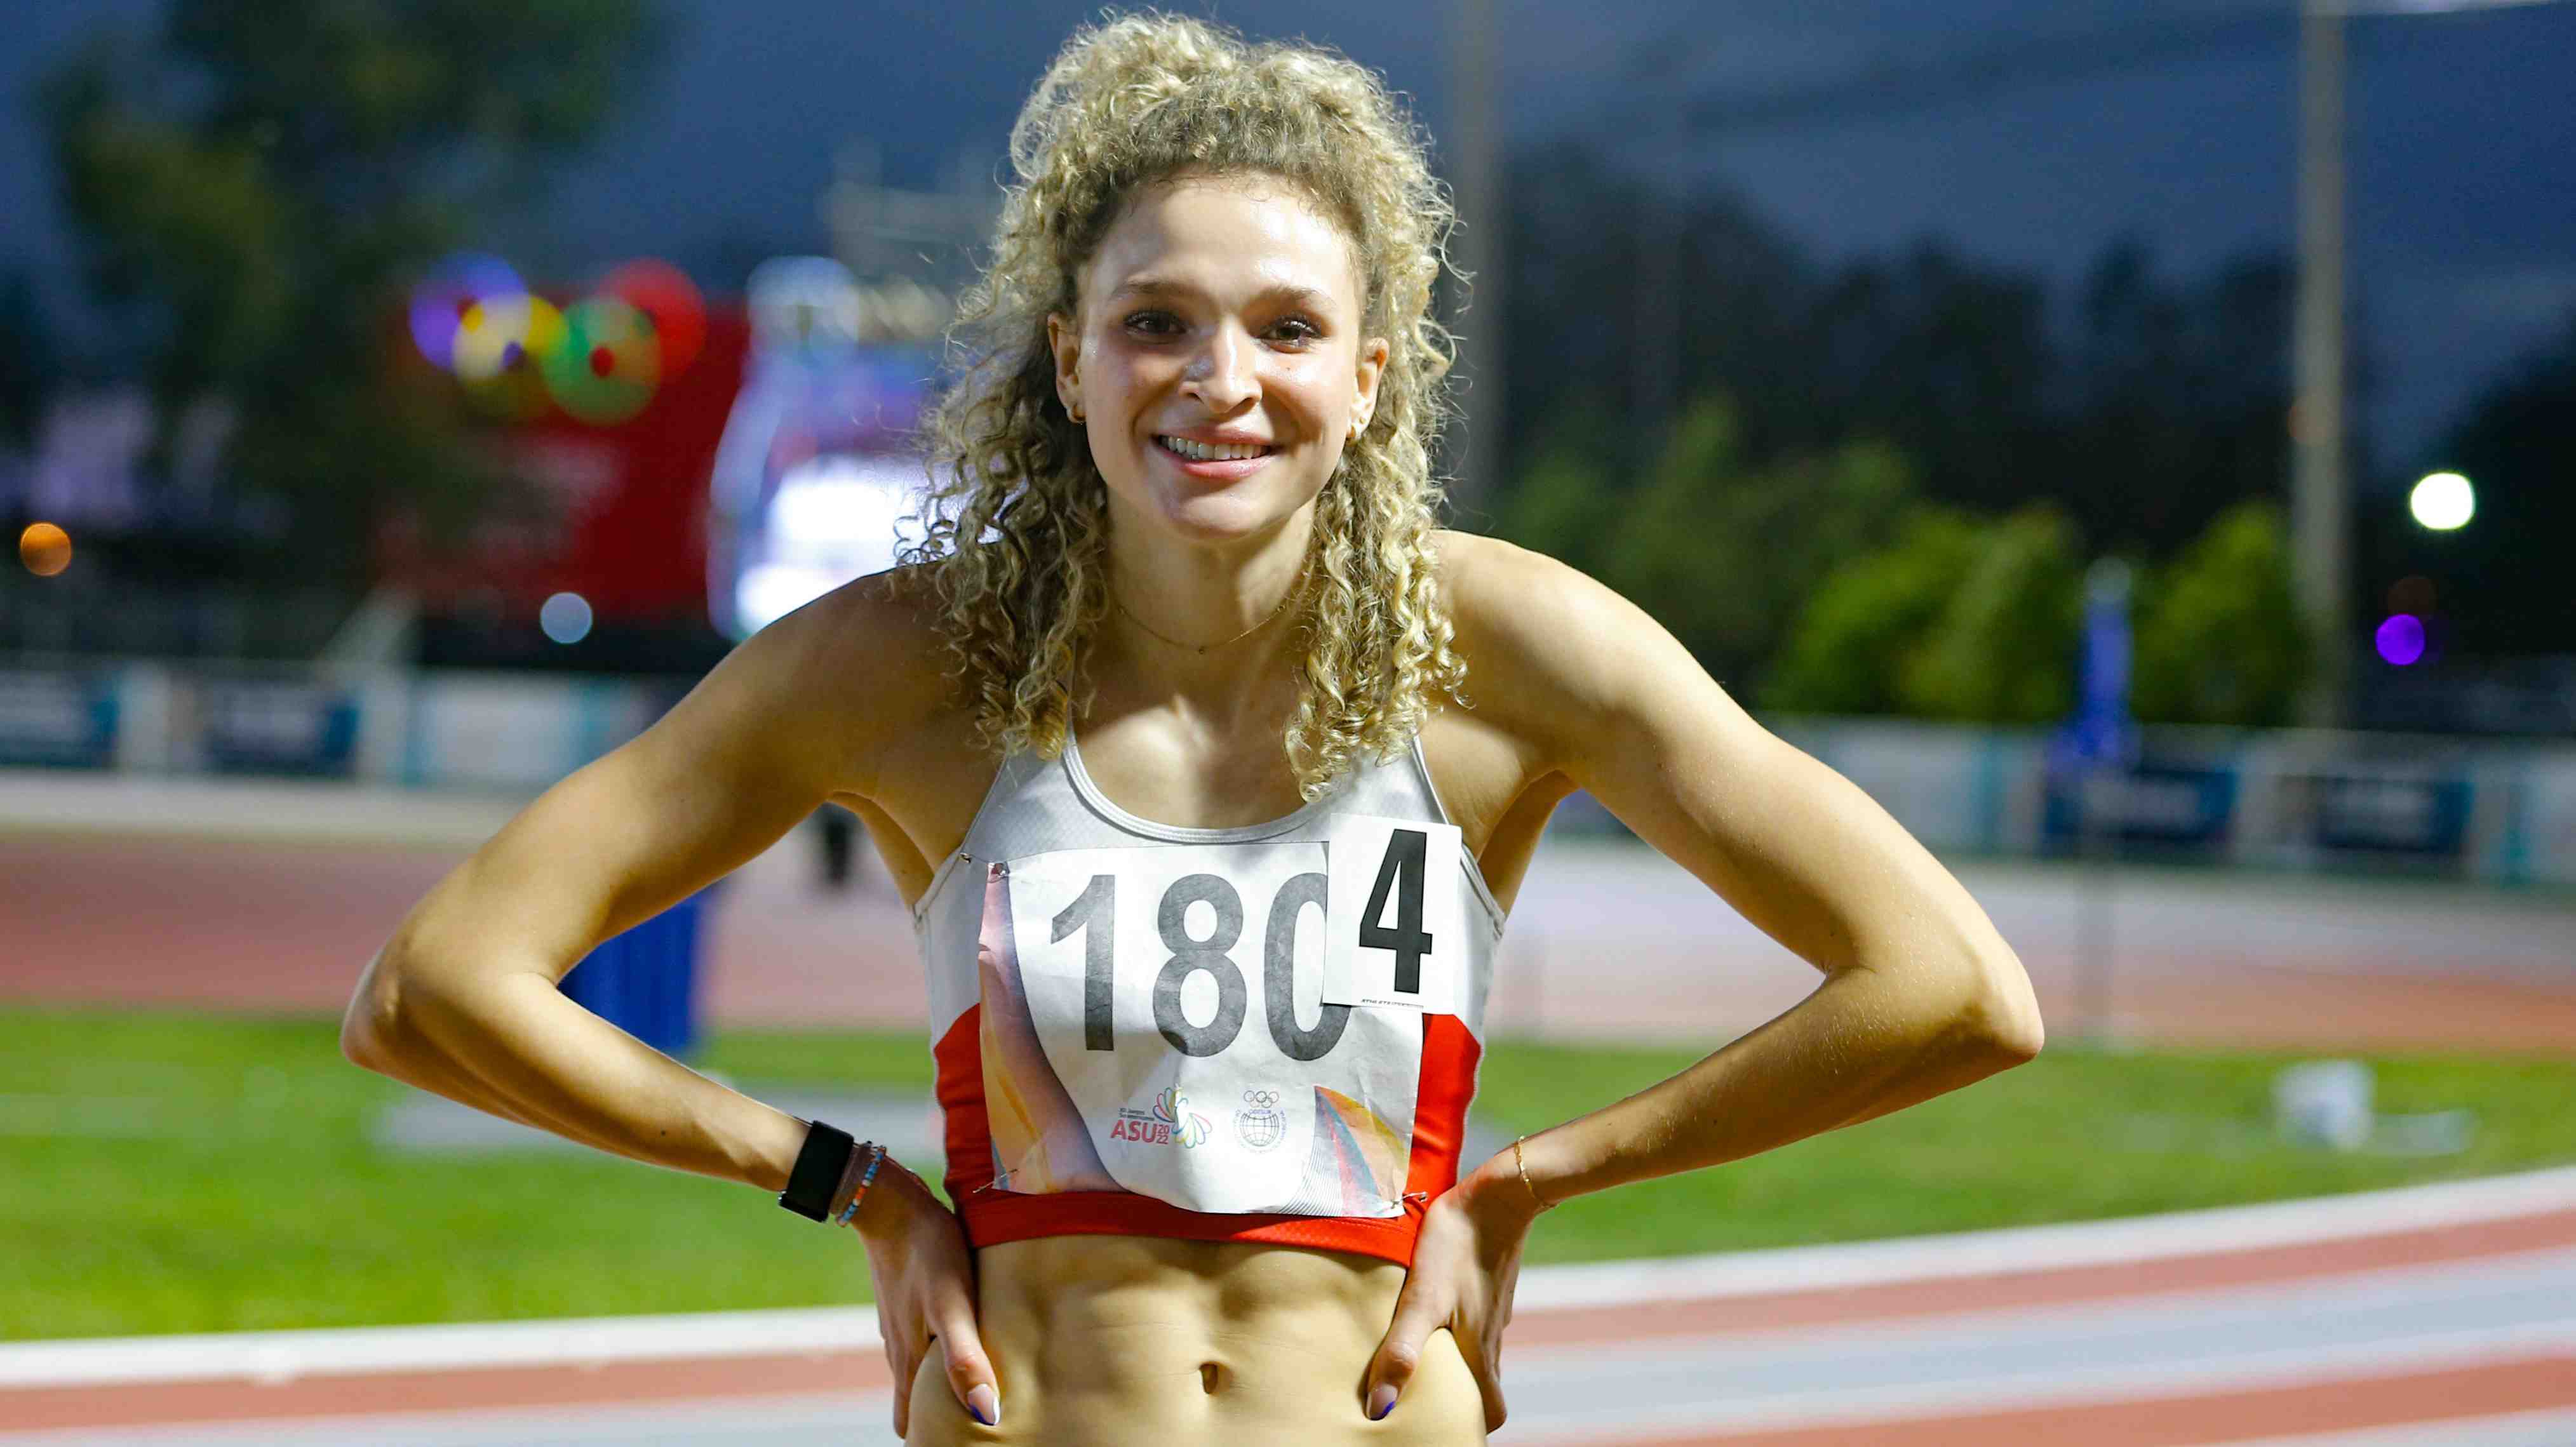 "No quería correr": Martina Weil y su inesperado relato del triunfo en 200m con el que rompió récord chileno de Isidora Jiménez